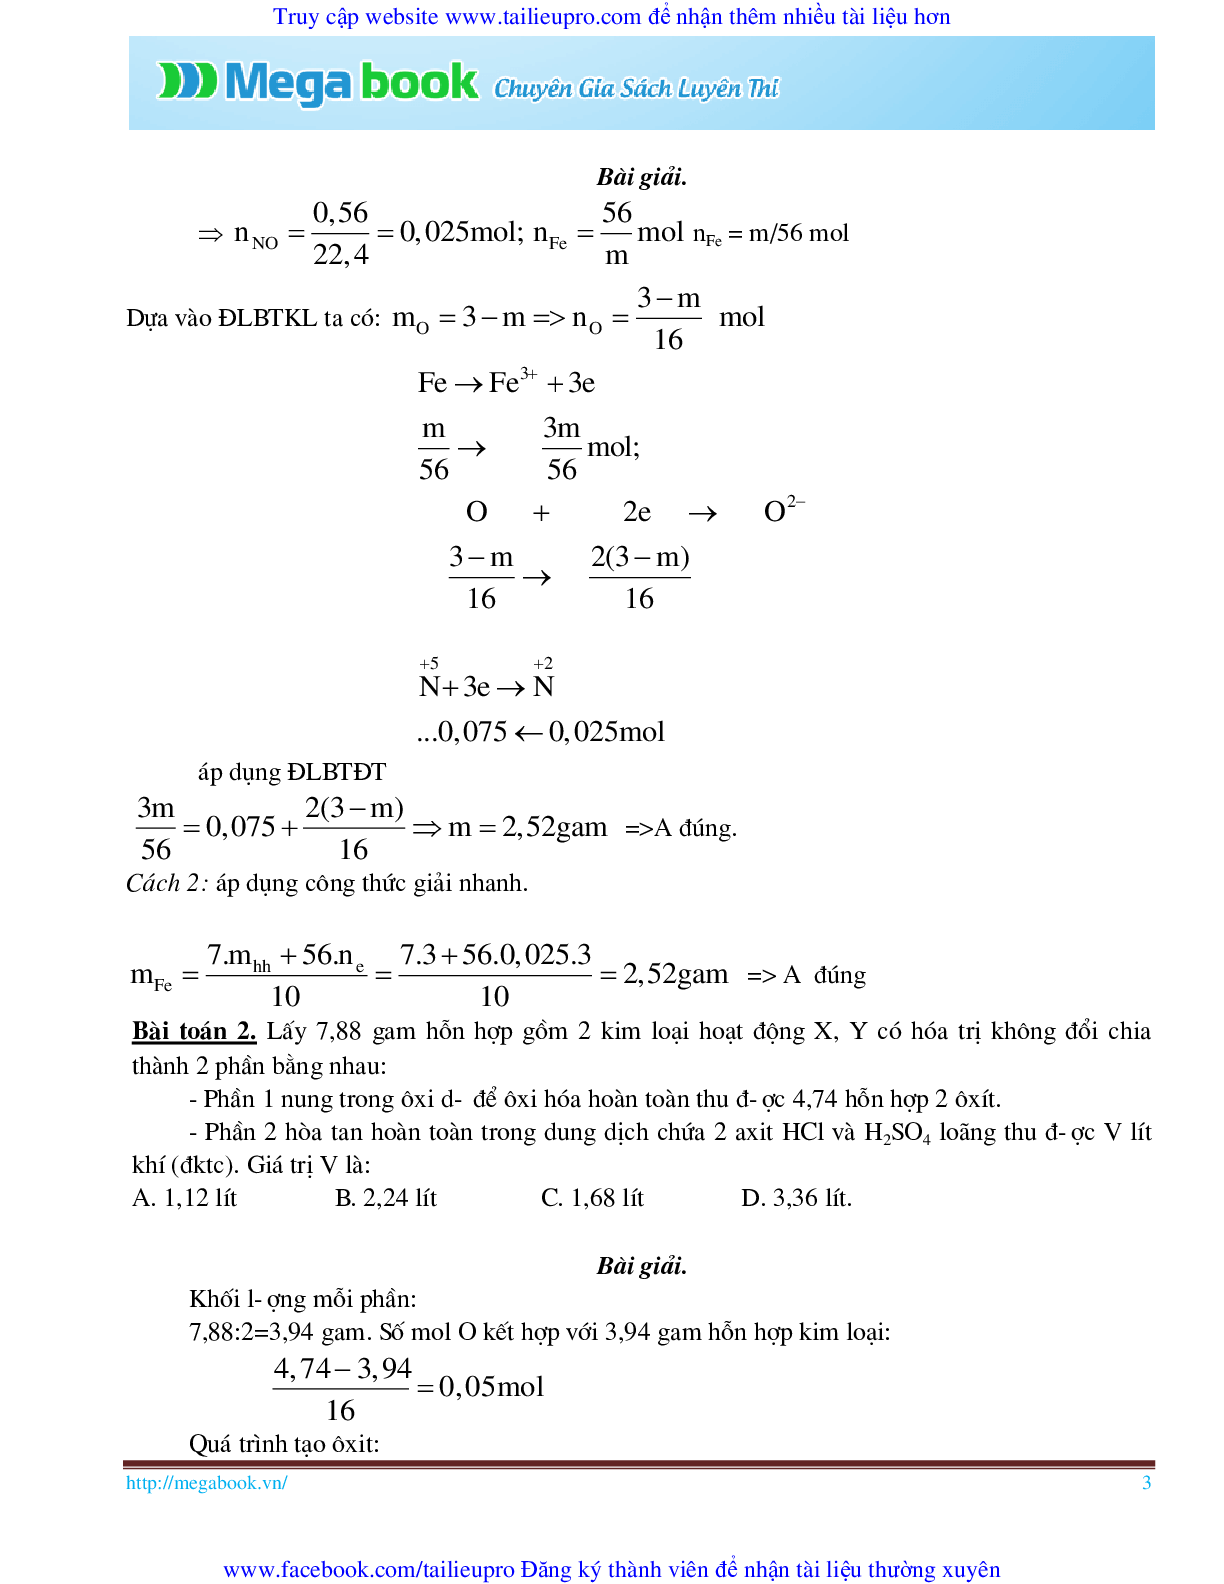 10 Bí quyết chinh phục phương pháp giải toán chủ chốt môn Hóa học ôn thi THPT Quốc Gia (trang 3)